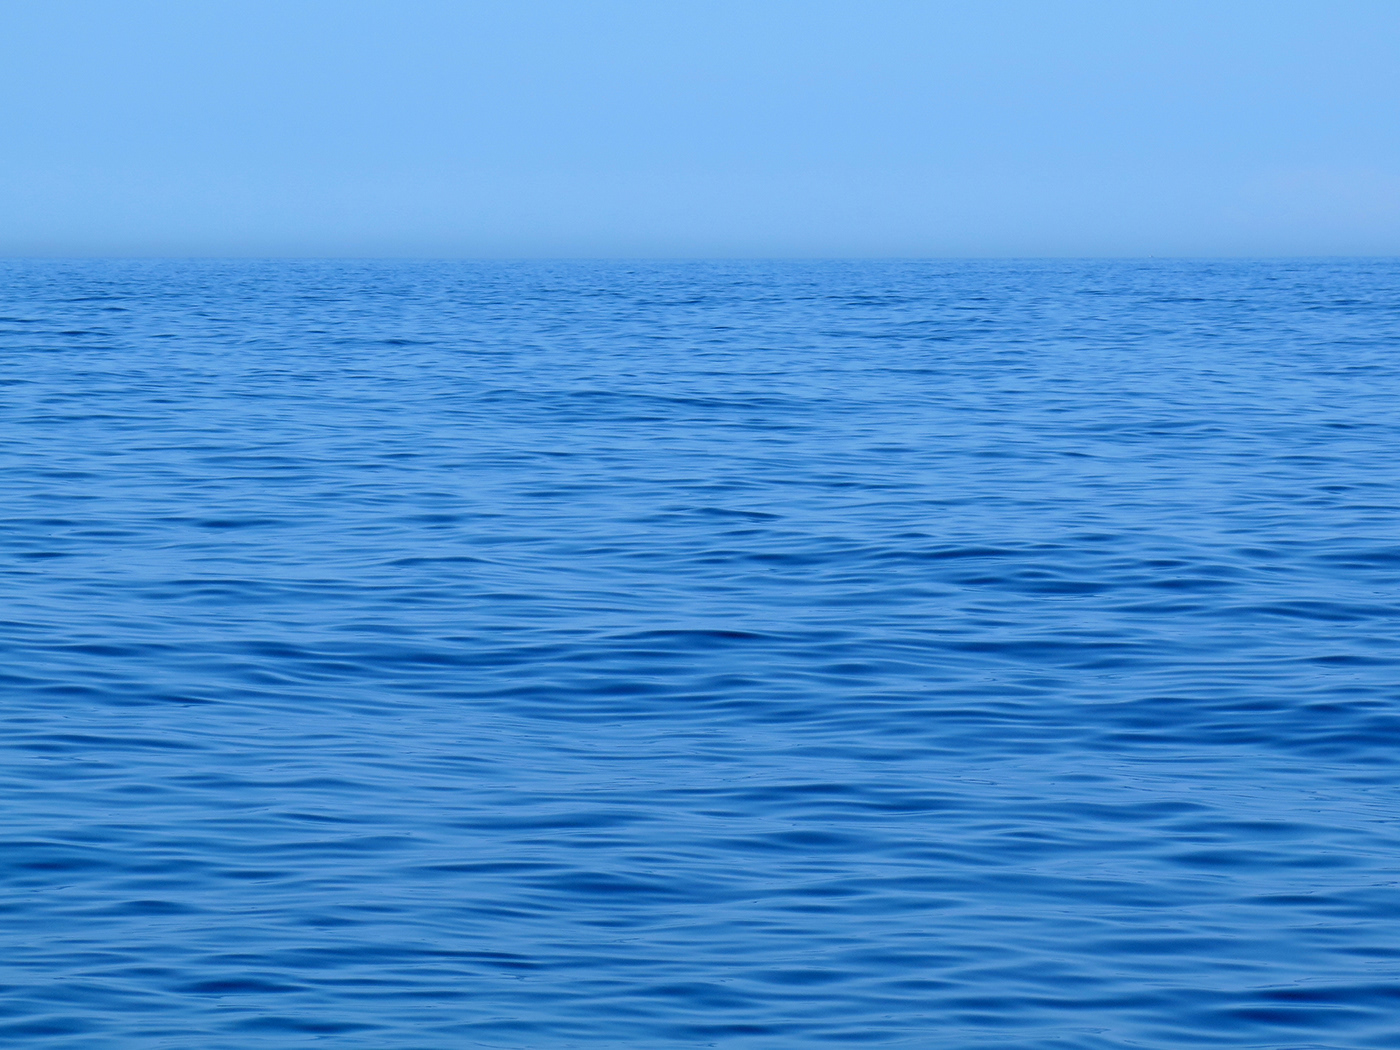 blue calm contemplation deep minimalist Ocean peace summer wave wellbeing